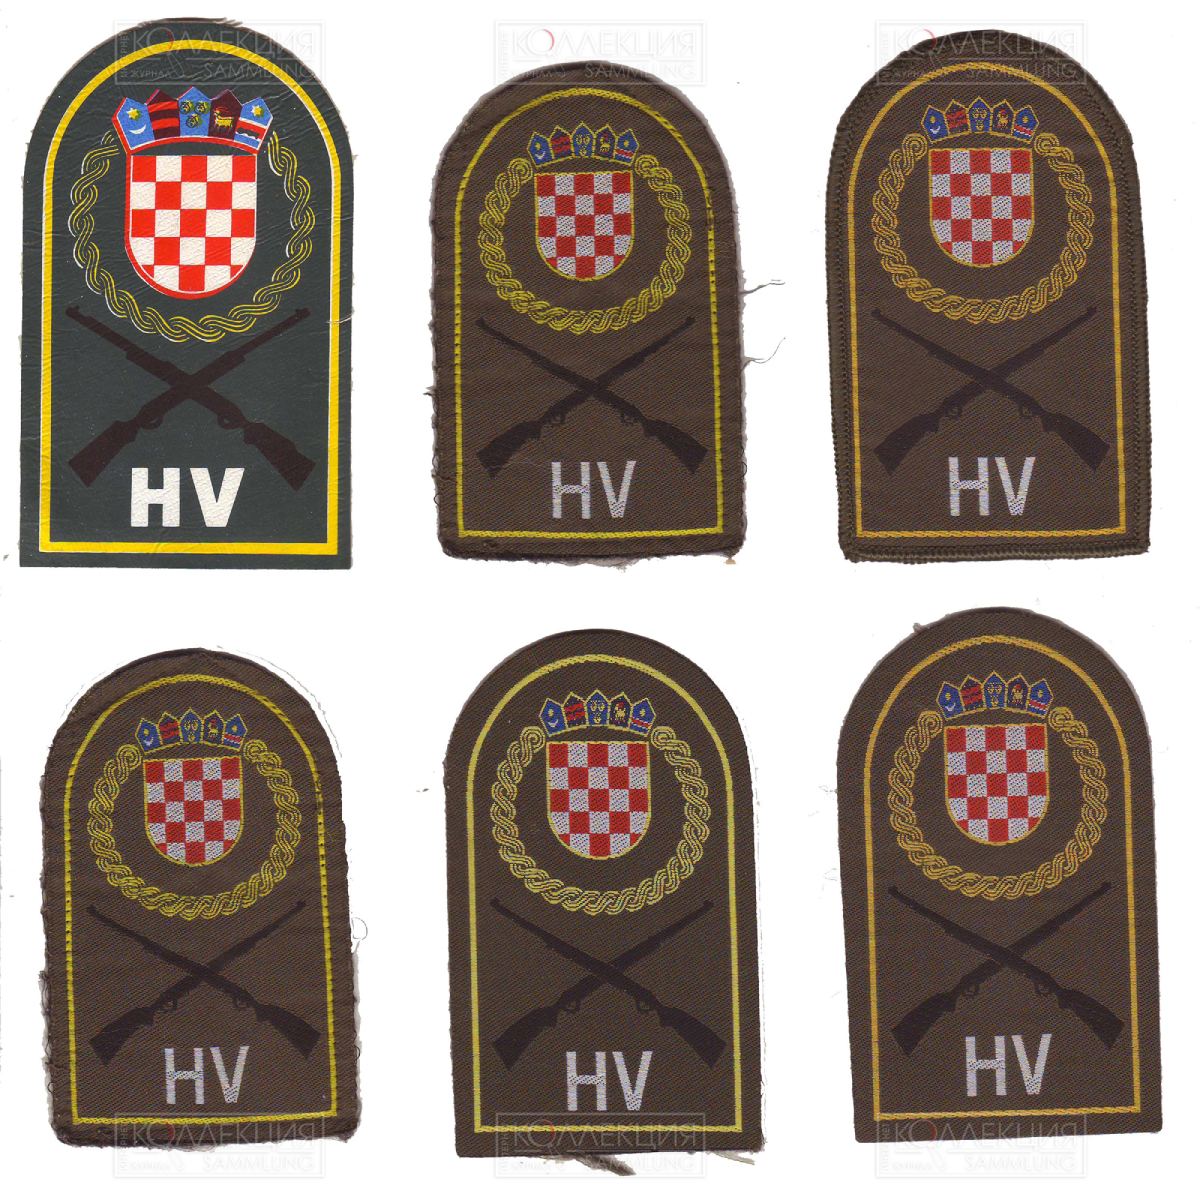 Нарукавные знаки Хорватского Войска. Тип 2 (образца 1992 года)